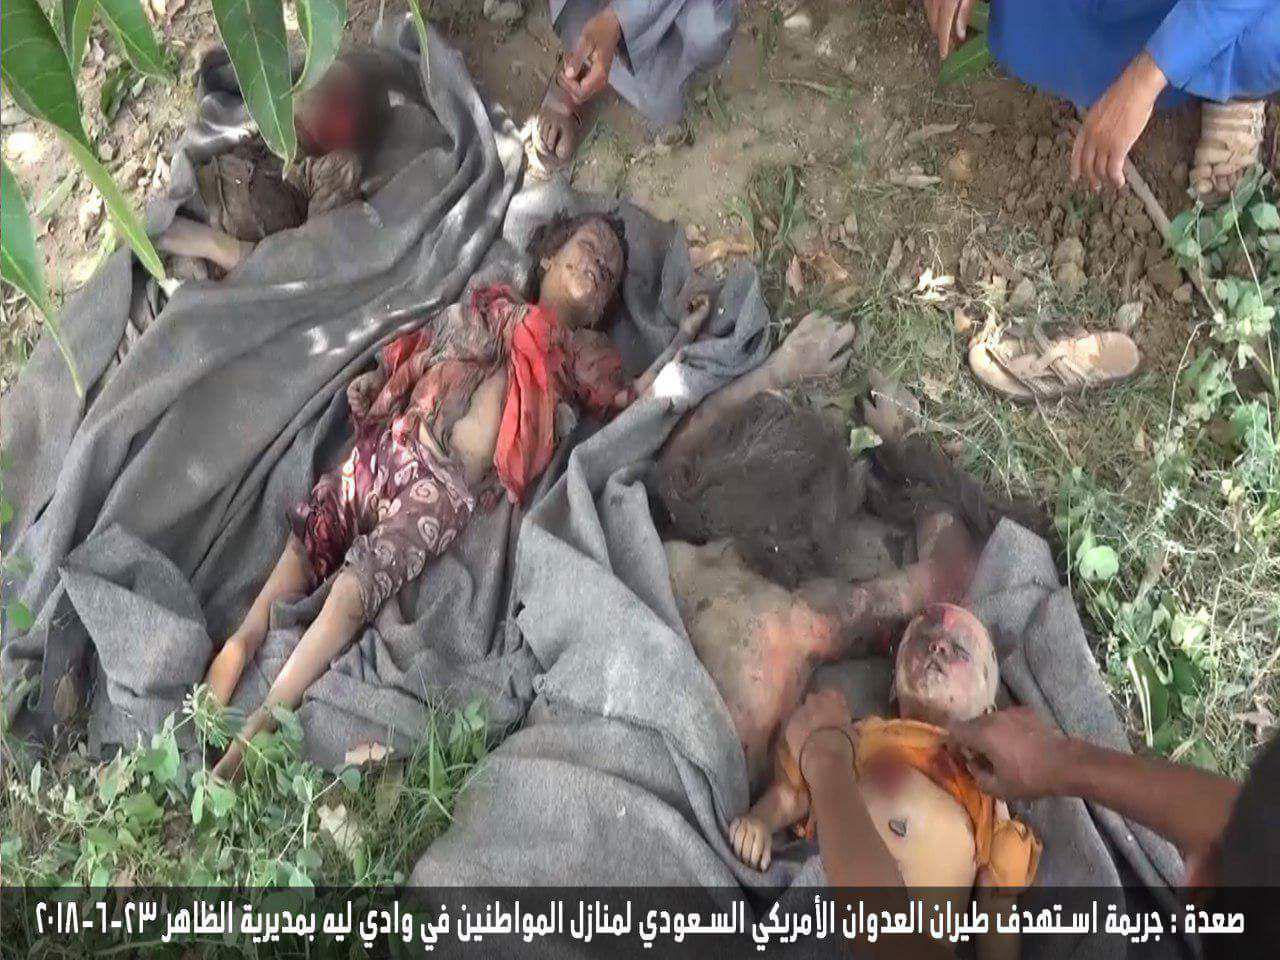 جنایت دیگری از ائتلاف متجاوز سعودی در یمن + عکس